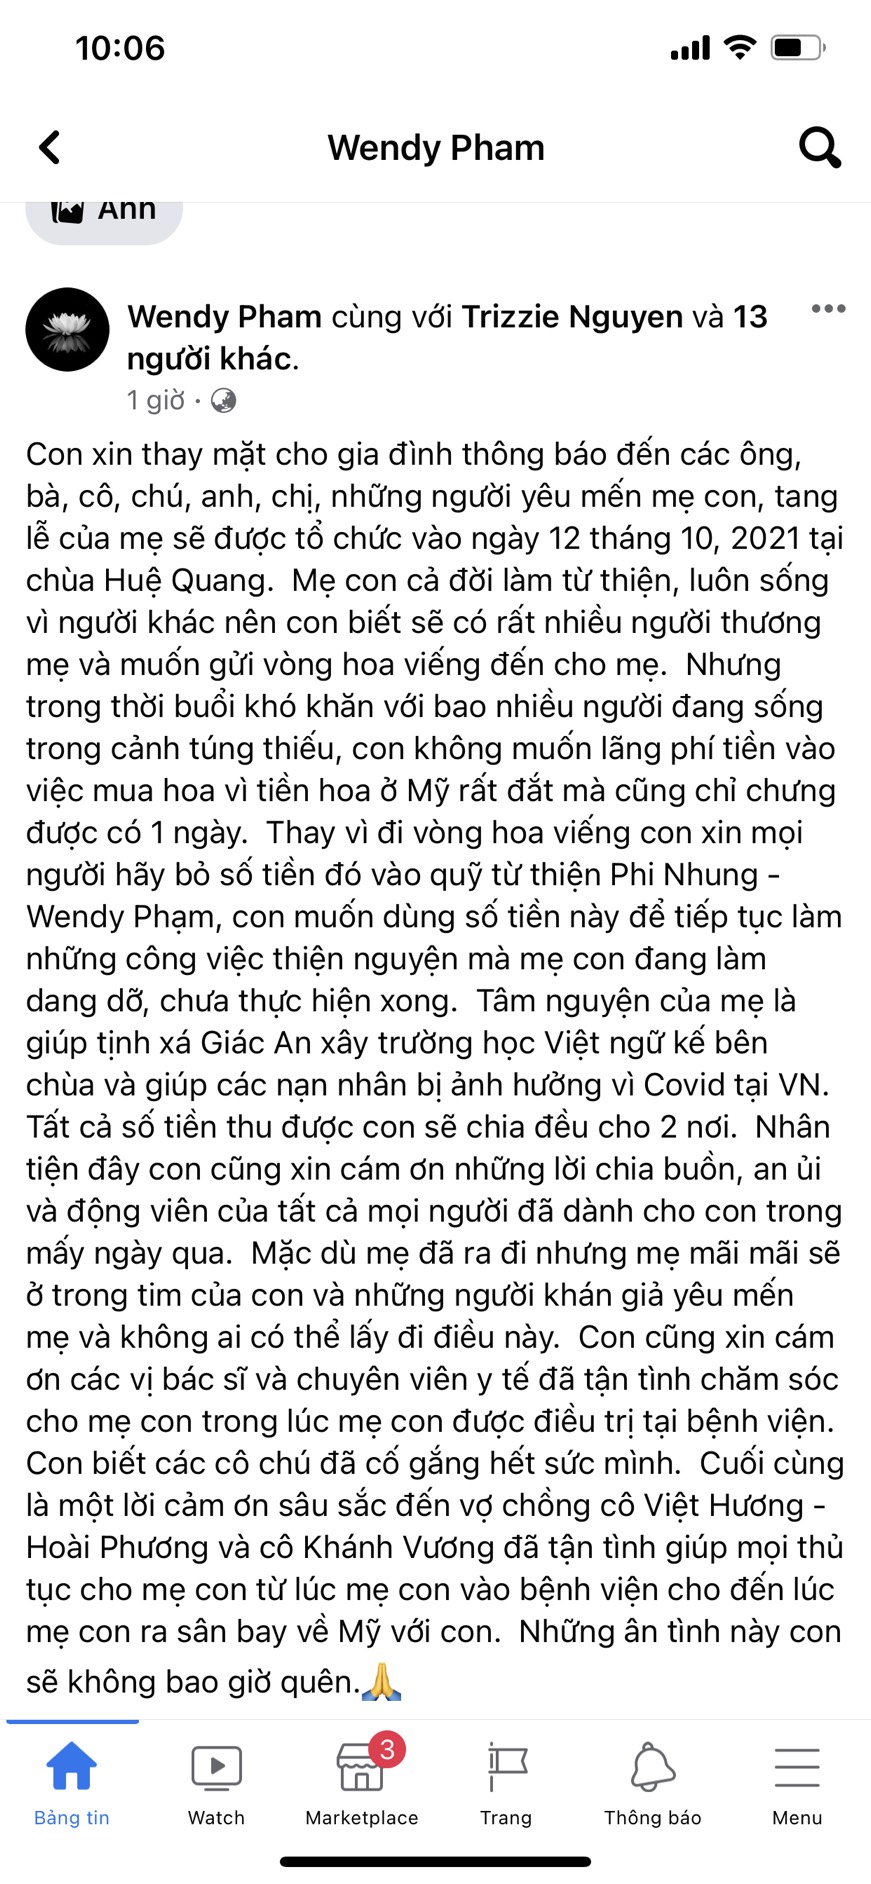 Bài đăng của Wendy Phạm vào ngày 9/10, thông báo về tang lễ của mẹ